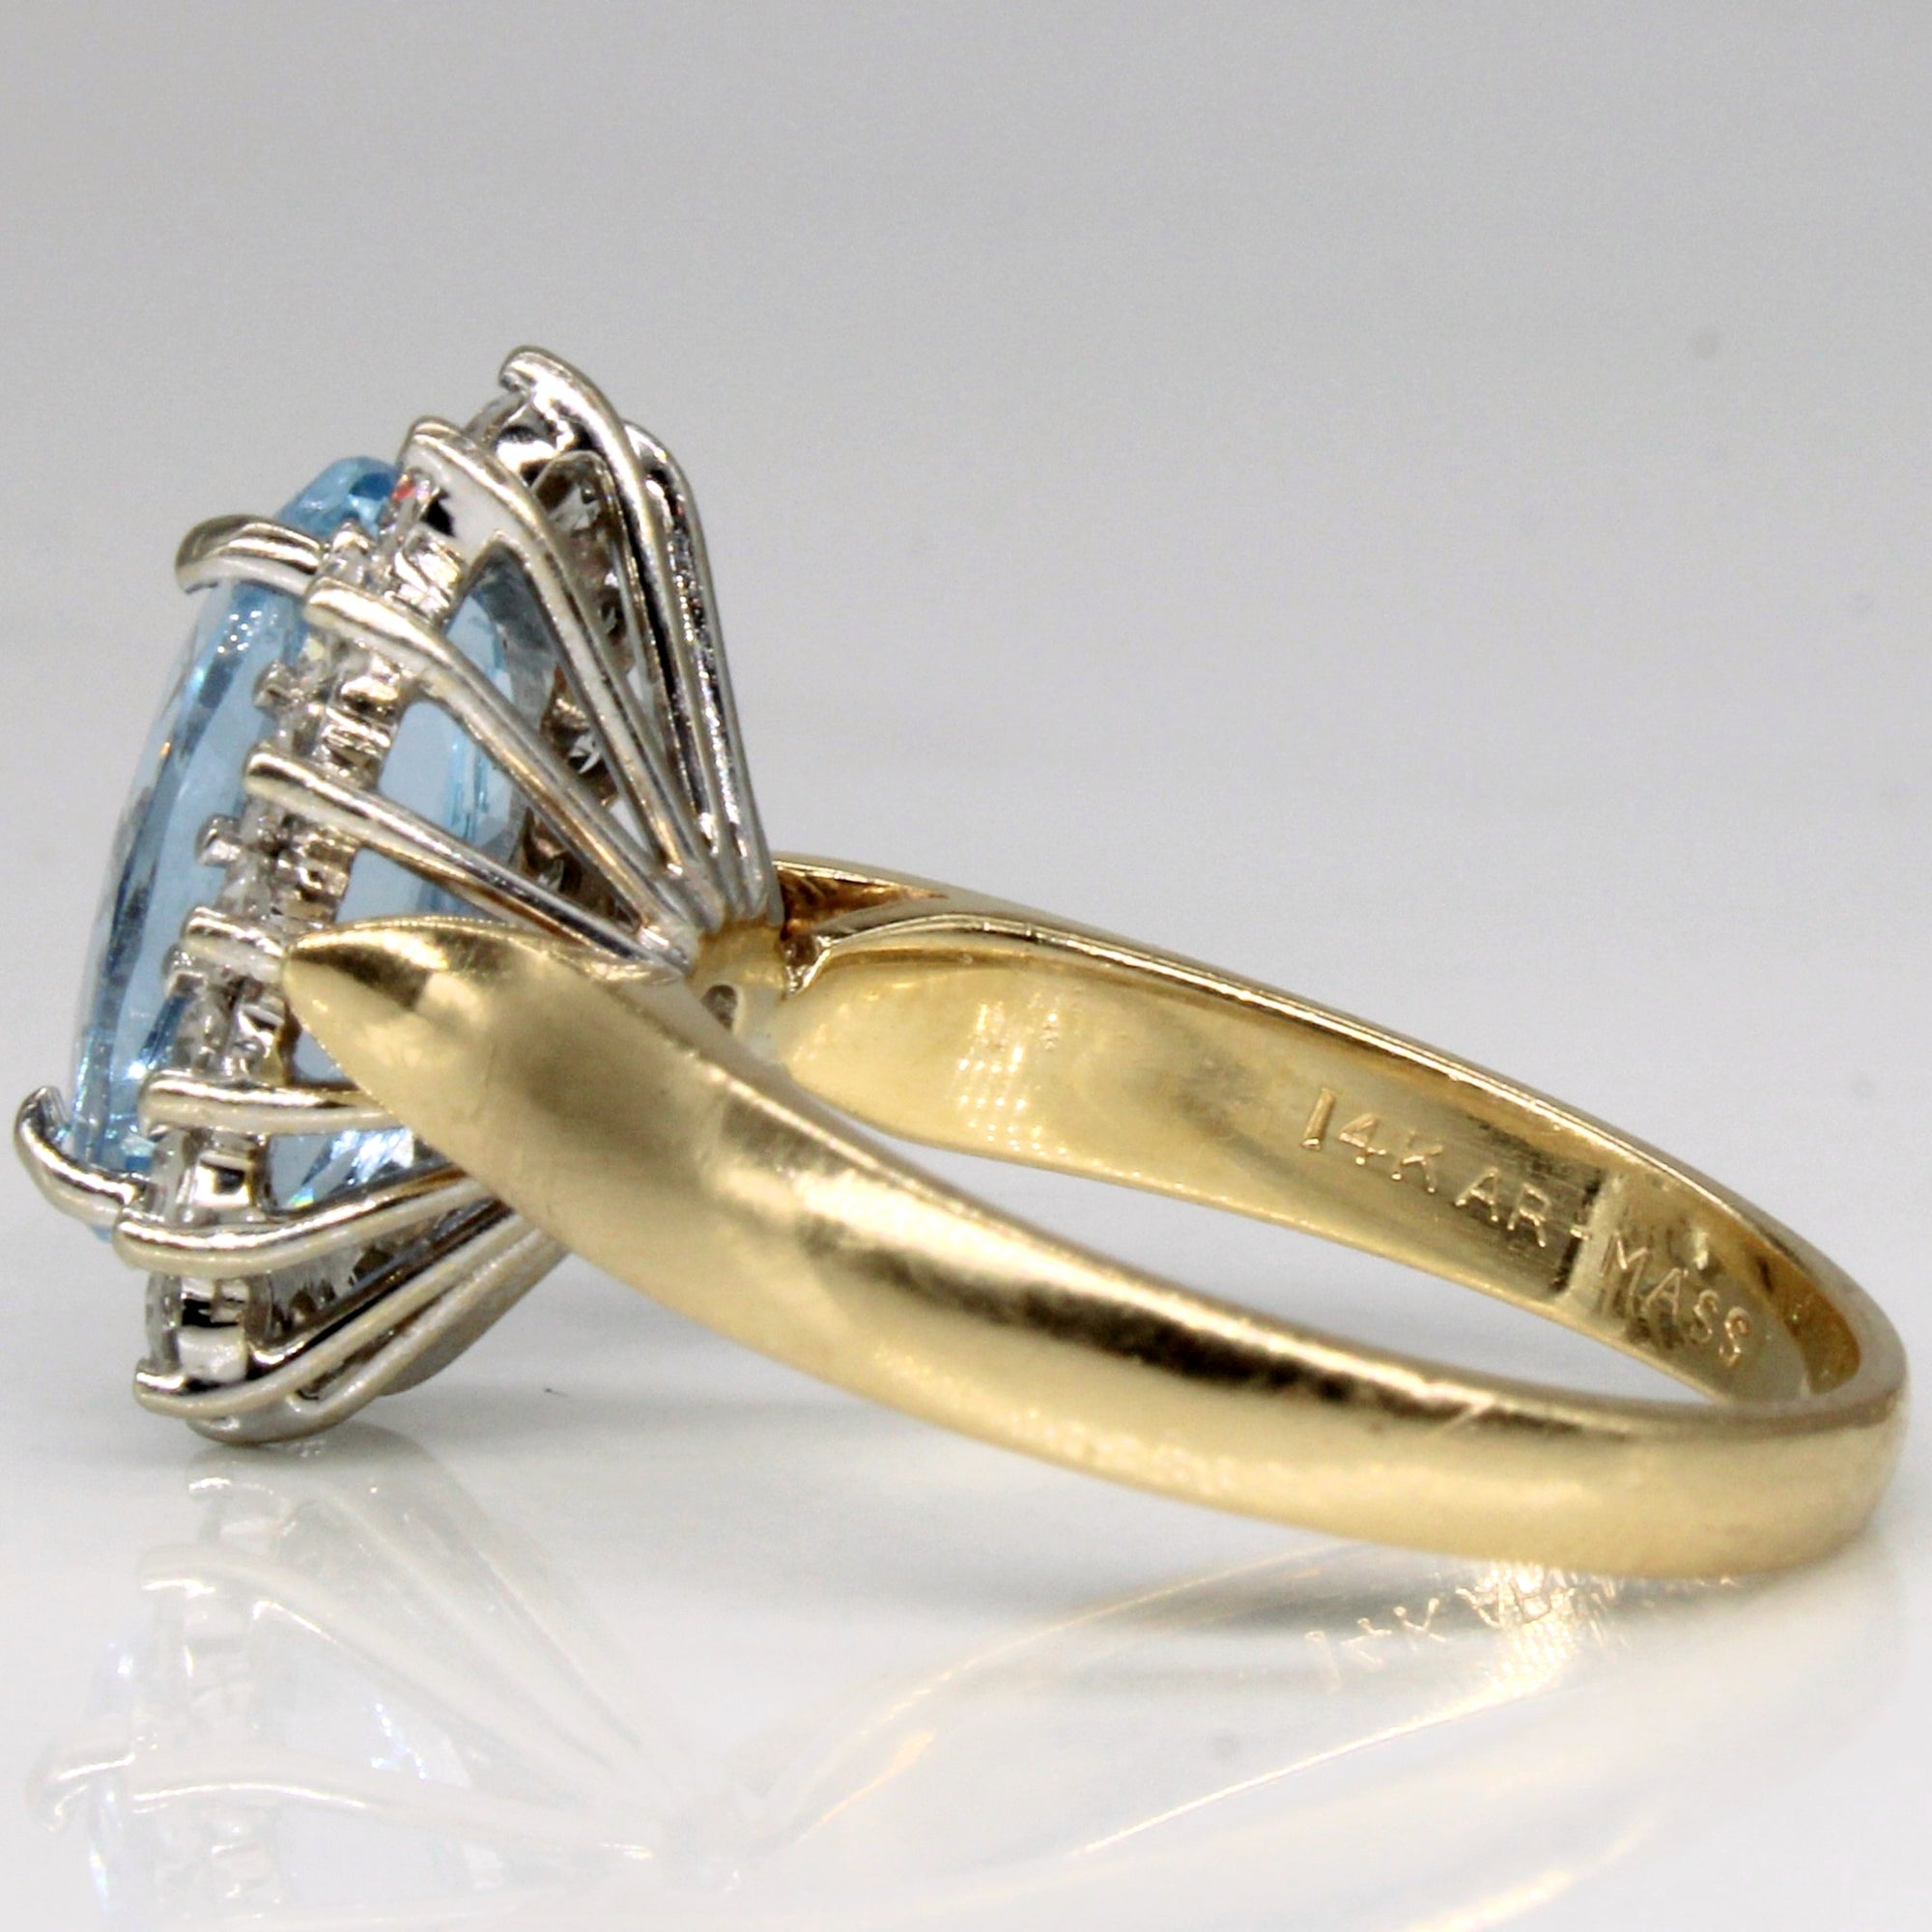 Aquamarine & Diamond Cocktail Ring | 2.00ct, 0.48ctw | SZ 5.5 |